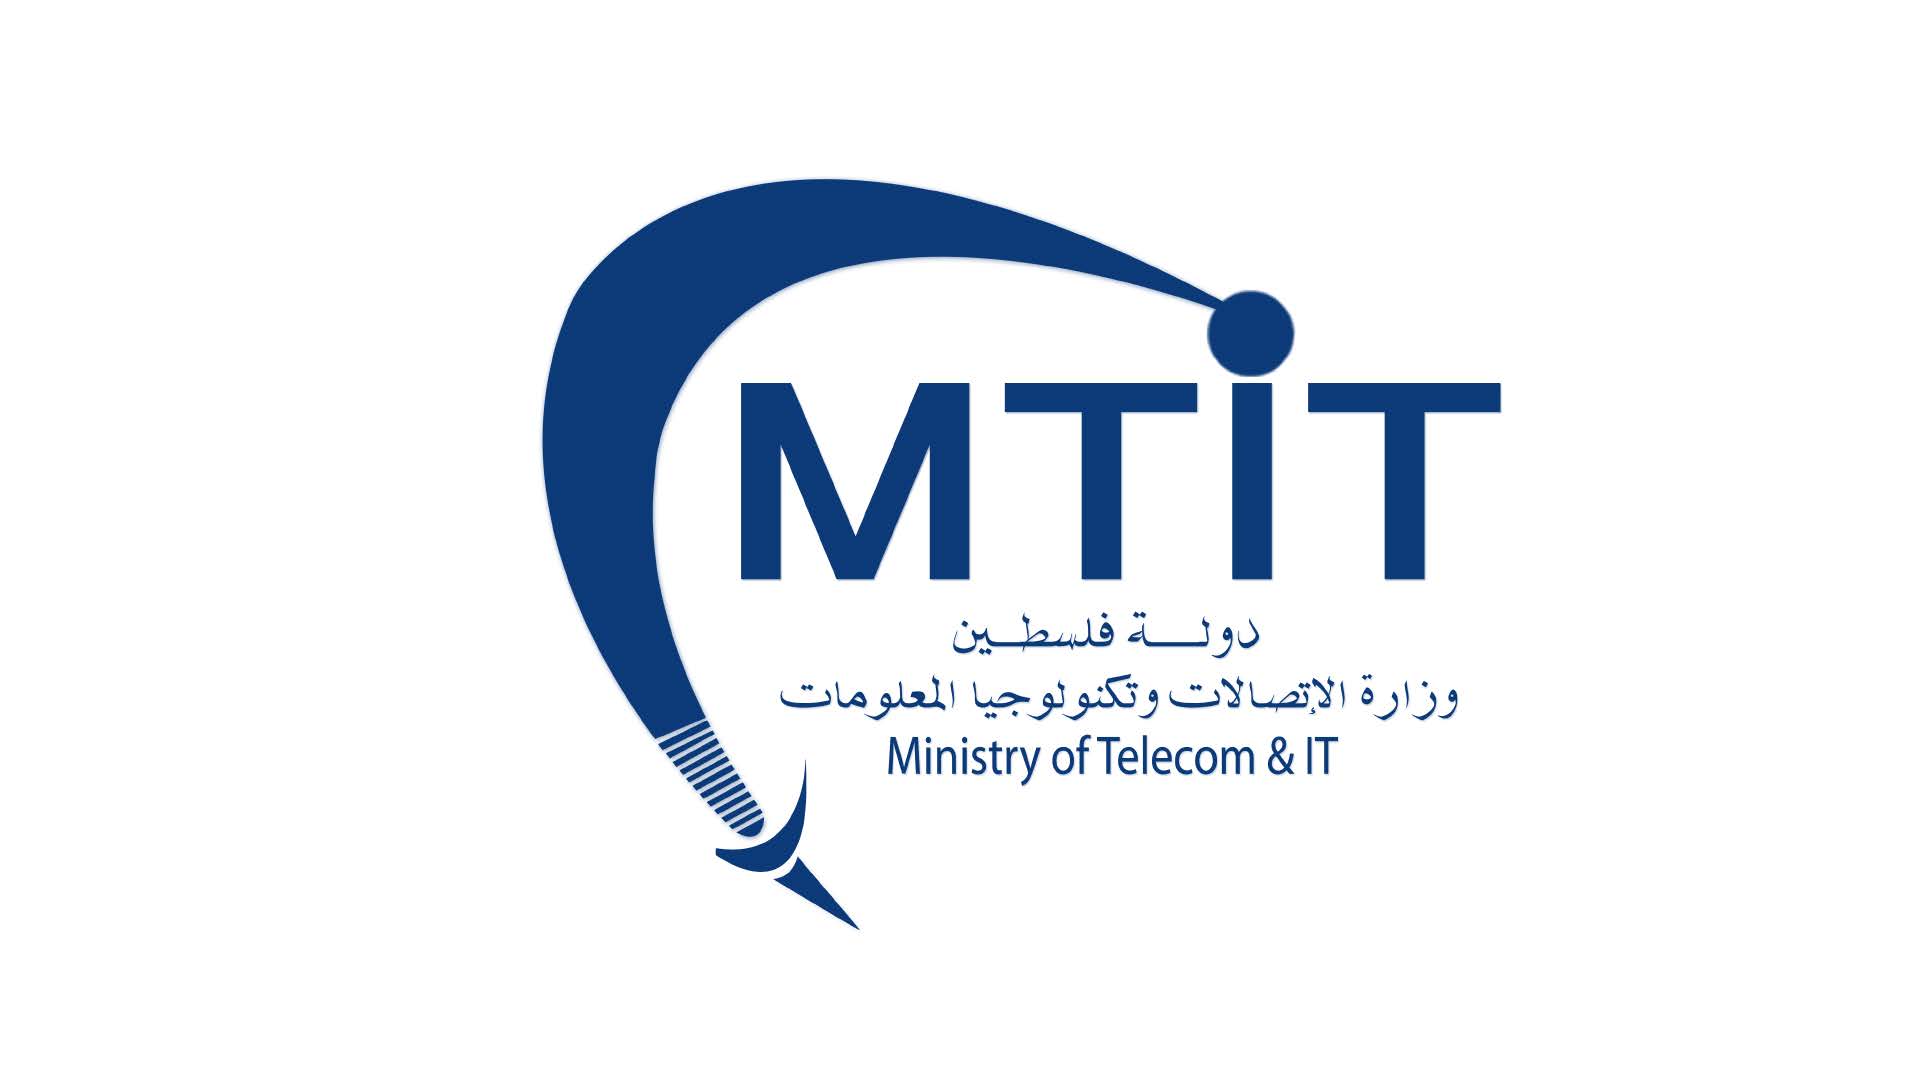 mtit_logo.jpg